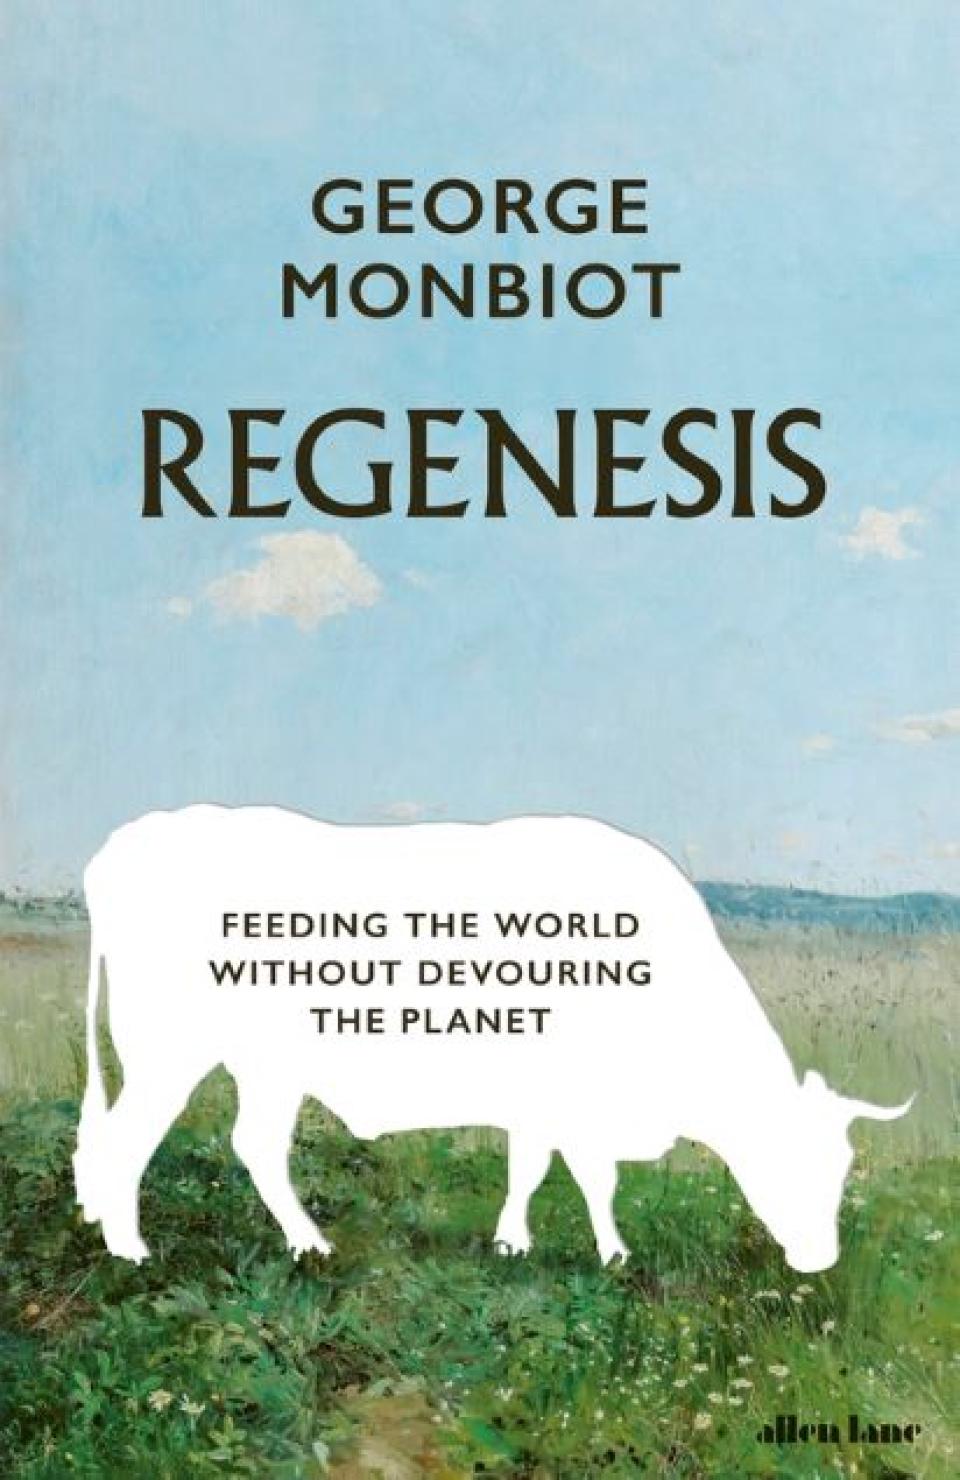 Author George Monbiot